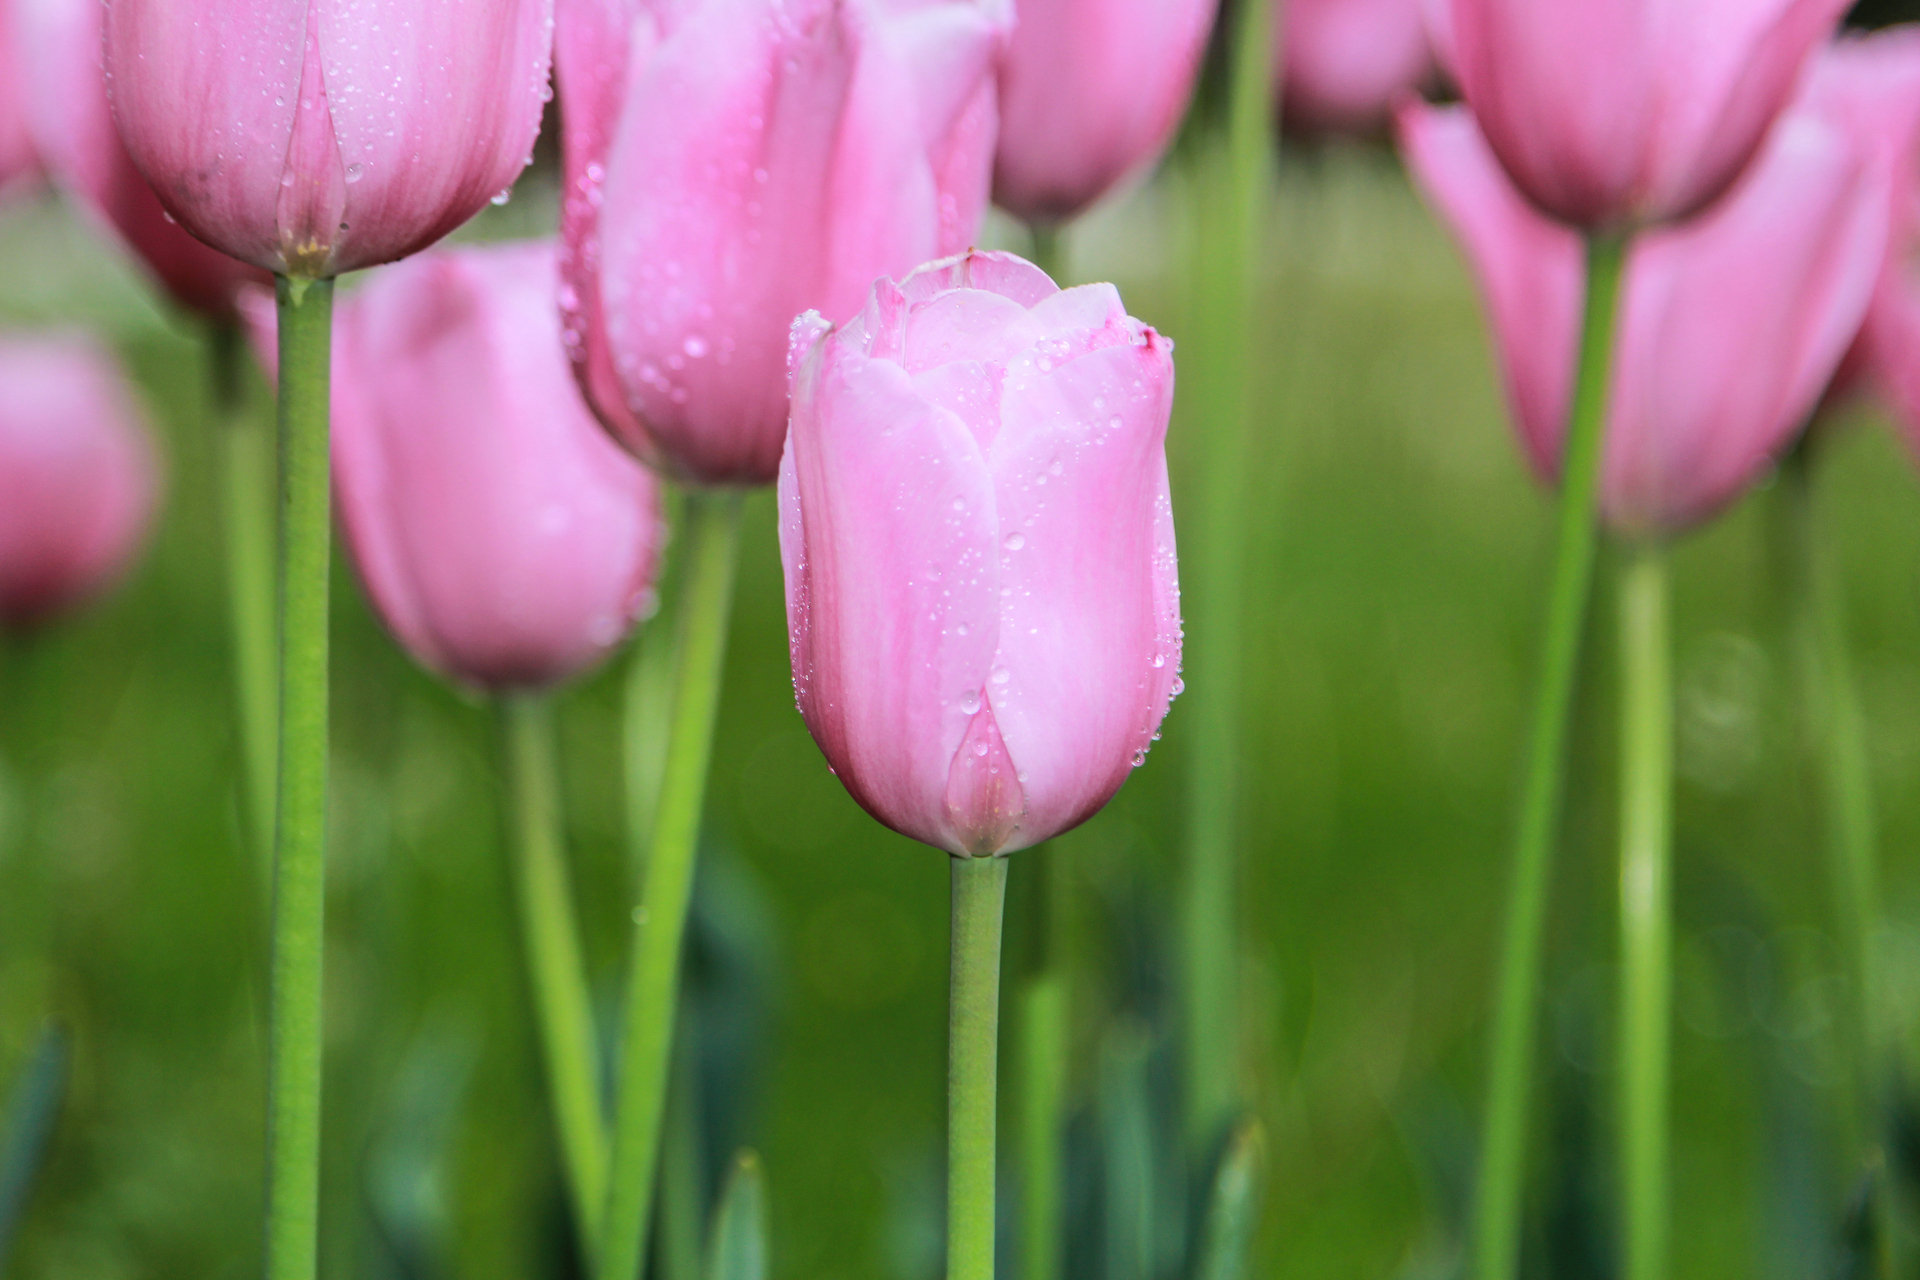 Ten uroczy obrazek przedstawia piękne, różowe tulipany, które zimują w gruncie. Ich soczyste płatki i intensywny kolor sprawiają, że te kwiaty cebulowe są jednymi z najpiękniejszych wiosennych roślin. Tulipany te można pozostawić w ziemi na zimę, aby cieszyć się nimi w kolejnym sezonie. Na tym zdjęciu widać, jak pięknie prezentują się w grupie, tworząc kolorową i radosną kompozycję.